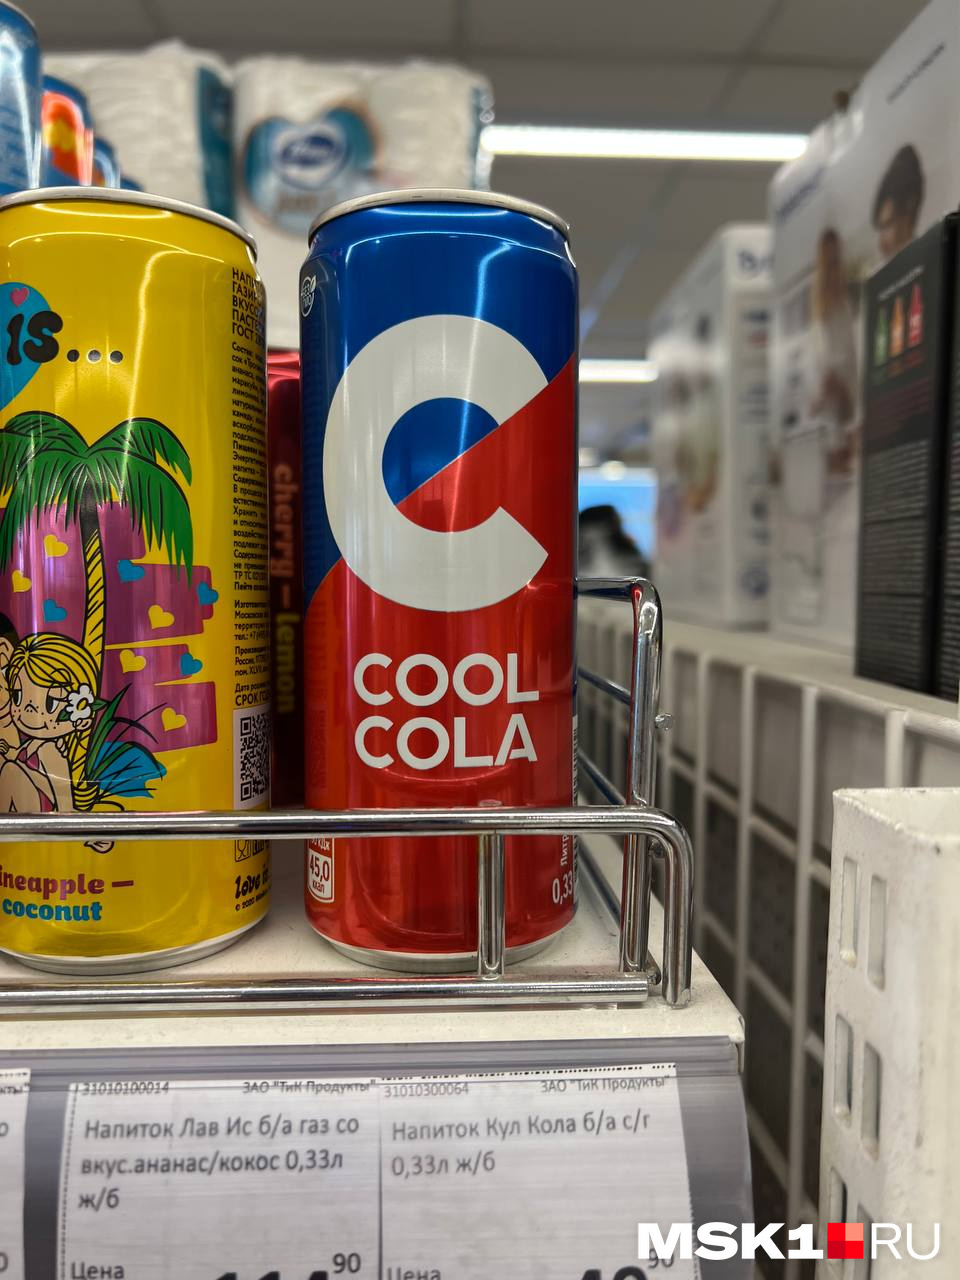 Cool Cola дешевле обычной